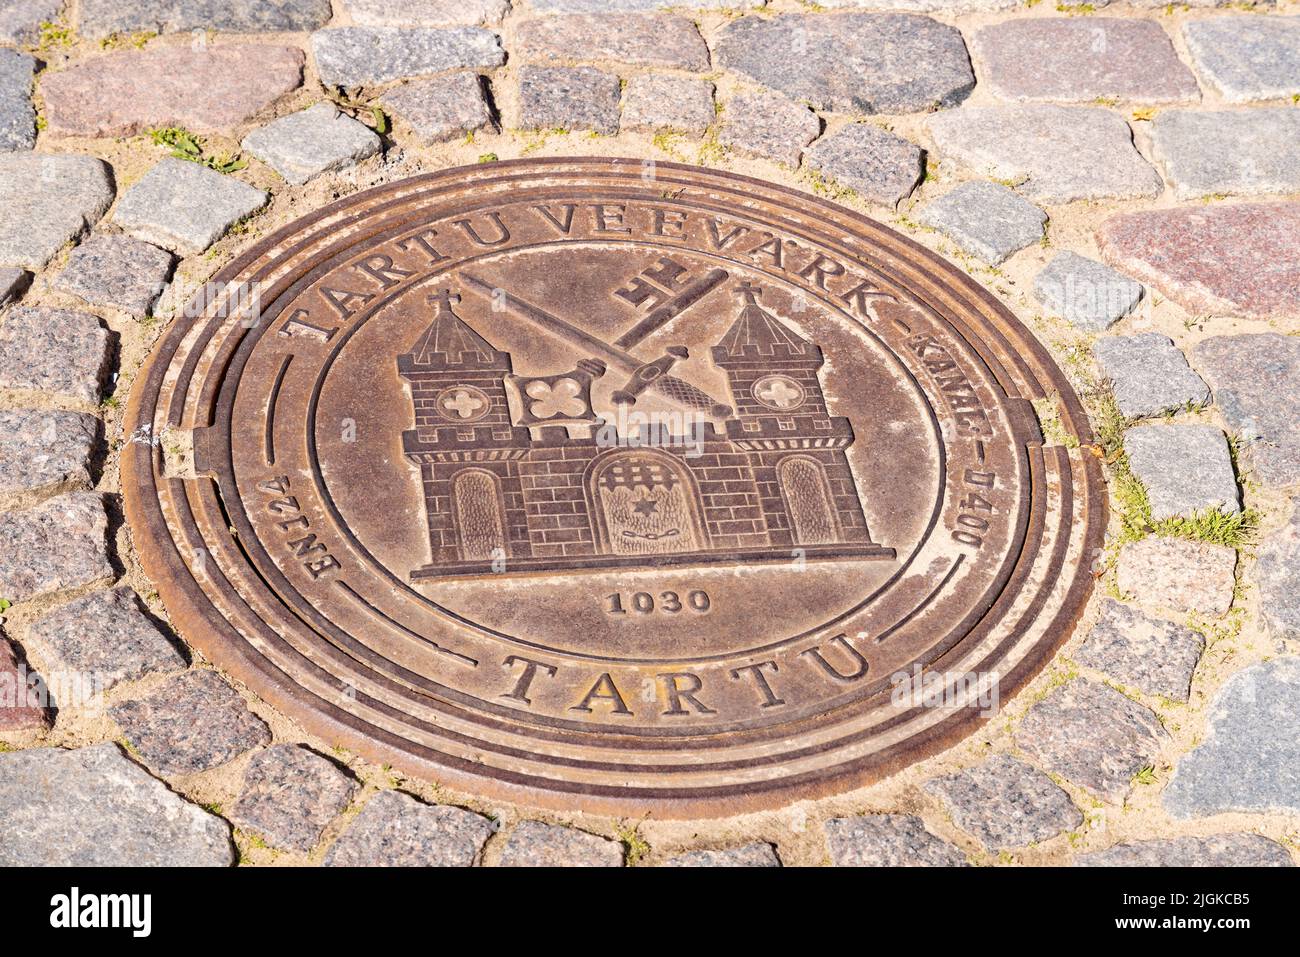 Stemma della città di Tartu, Estonia, su una targa metallica posta sulla strada, Tartu, Estonia Stati baltici, Europa Foto Stock